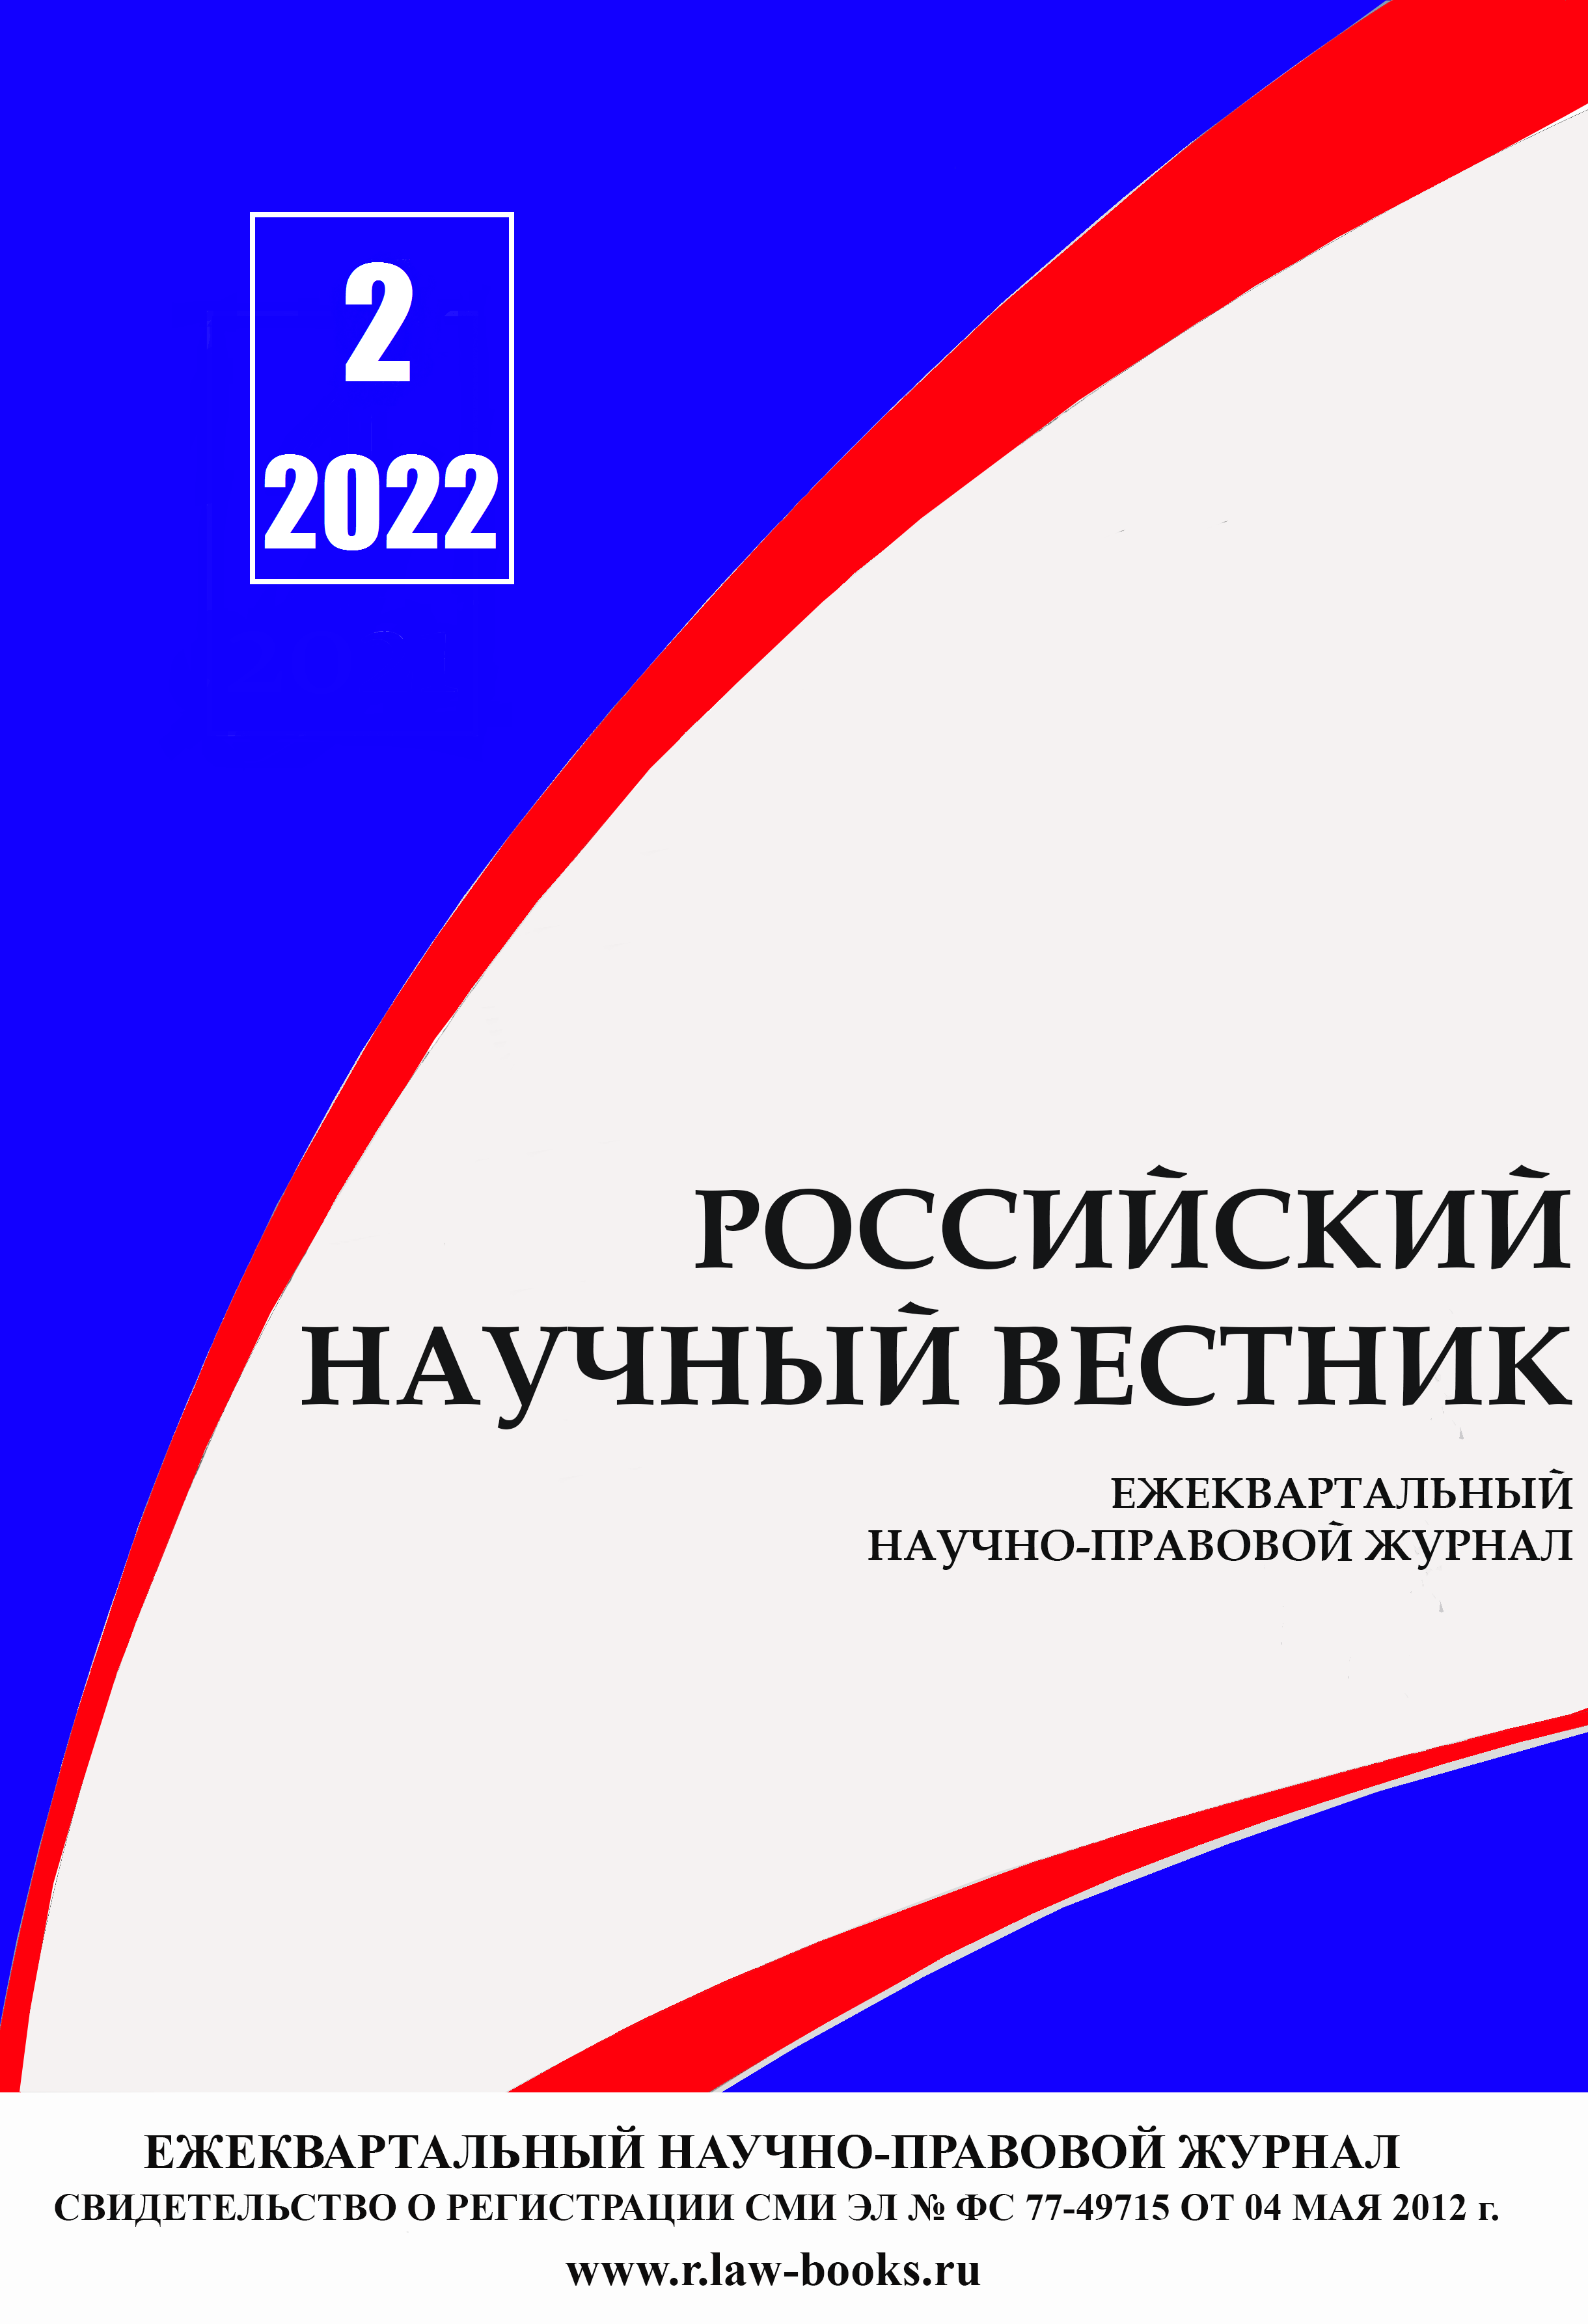 You are currently viewing Российский научный вестник № 2 2022